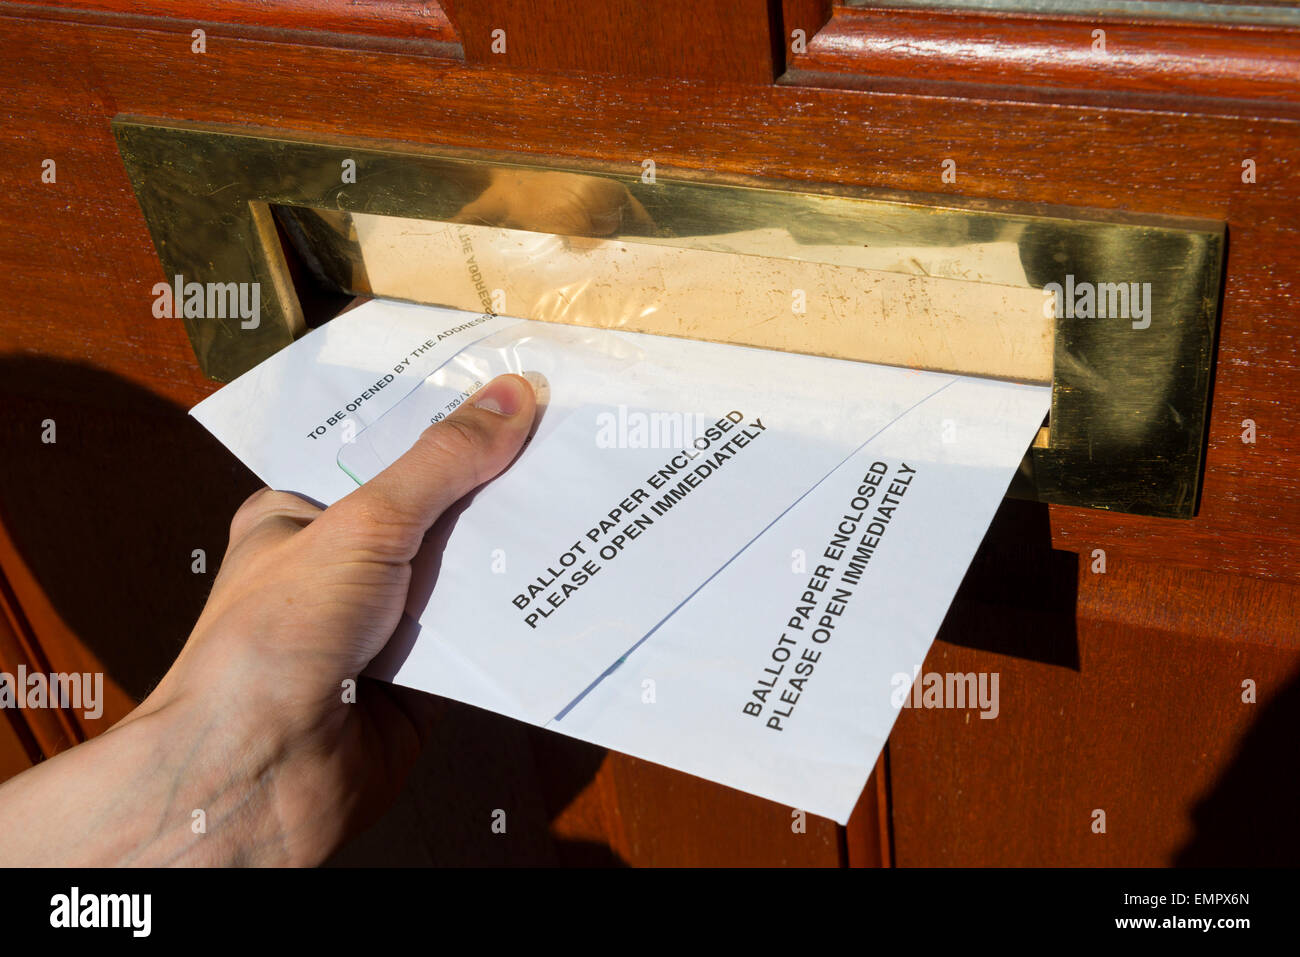 Padroni di casa che hanno scelto di votare per posta sono ora a ricevere le loro schede elettorali per il 2015 elezioni generali:, Telford Shropshire, Inghilterra, Regno Unito: Mercoledì 23 Aprile 2015. Foto Stock